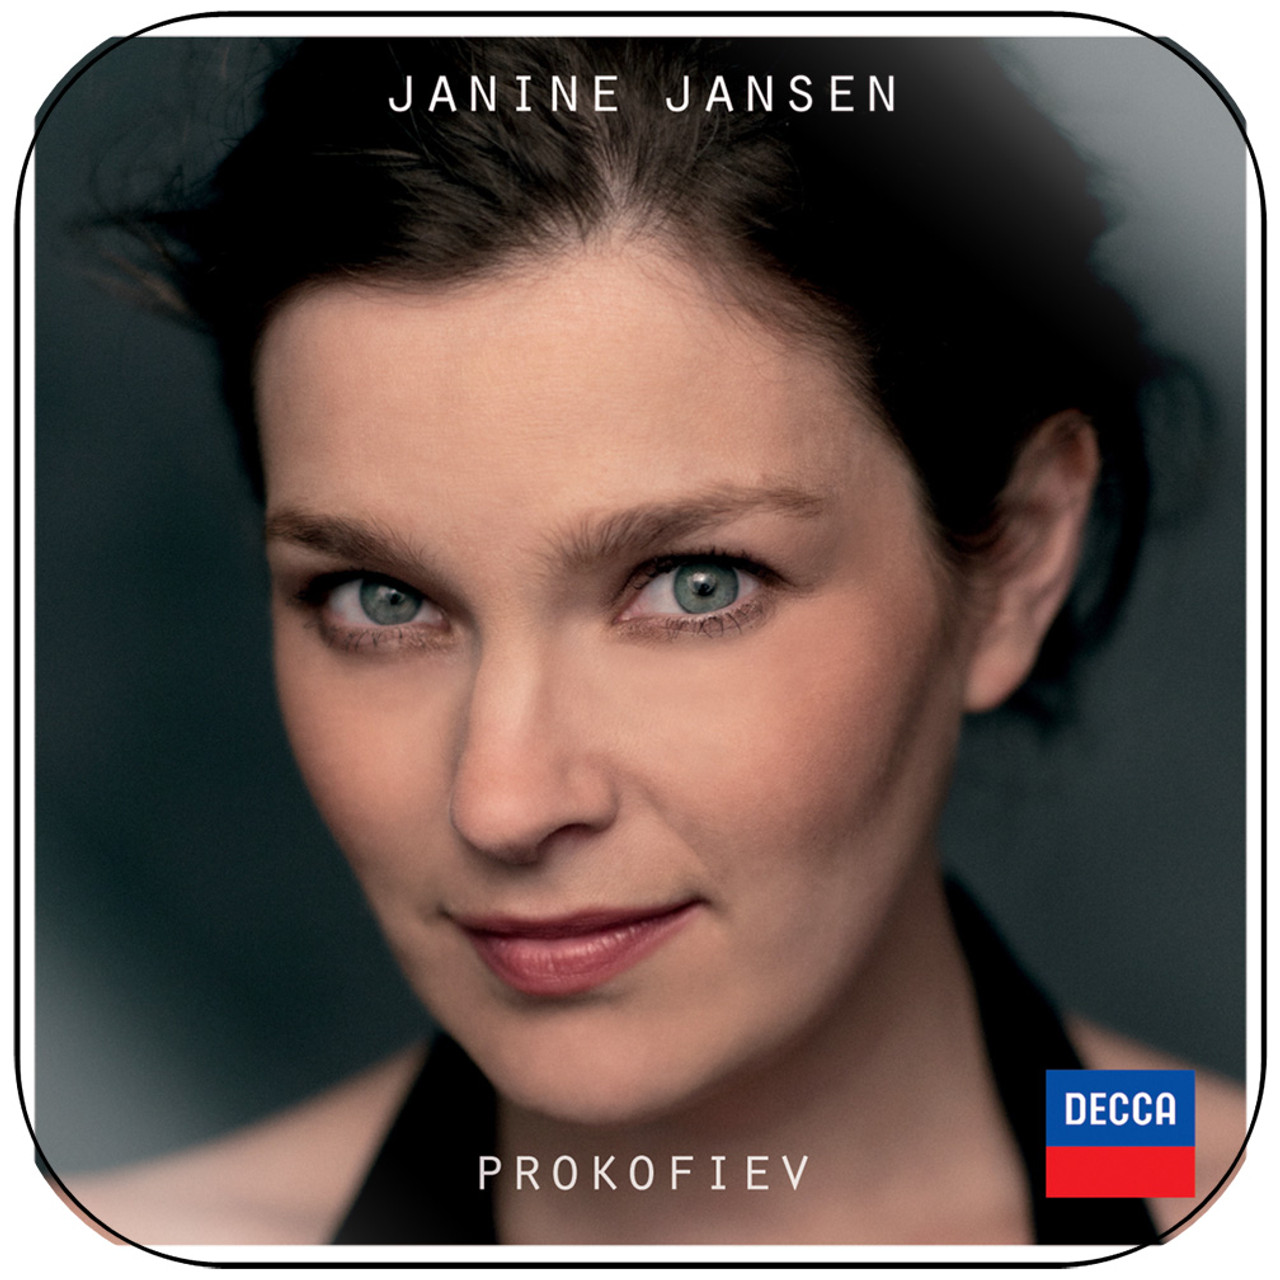 Janine Jansen Prokofiev Album Cover Sticker